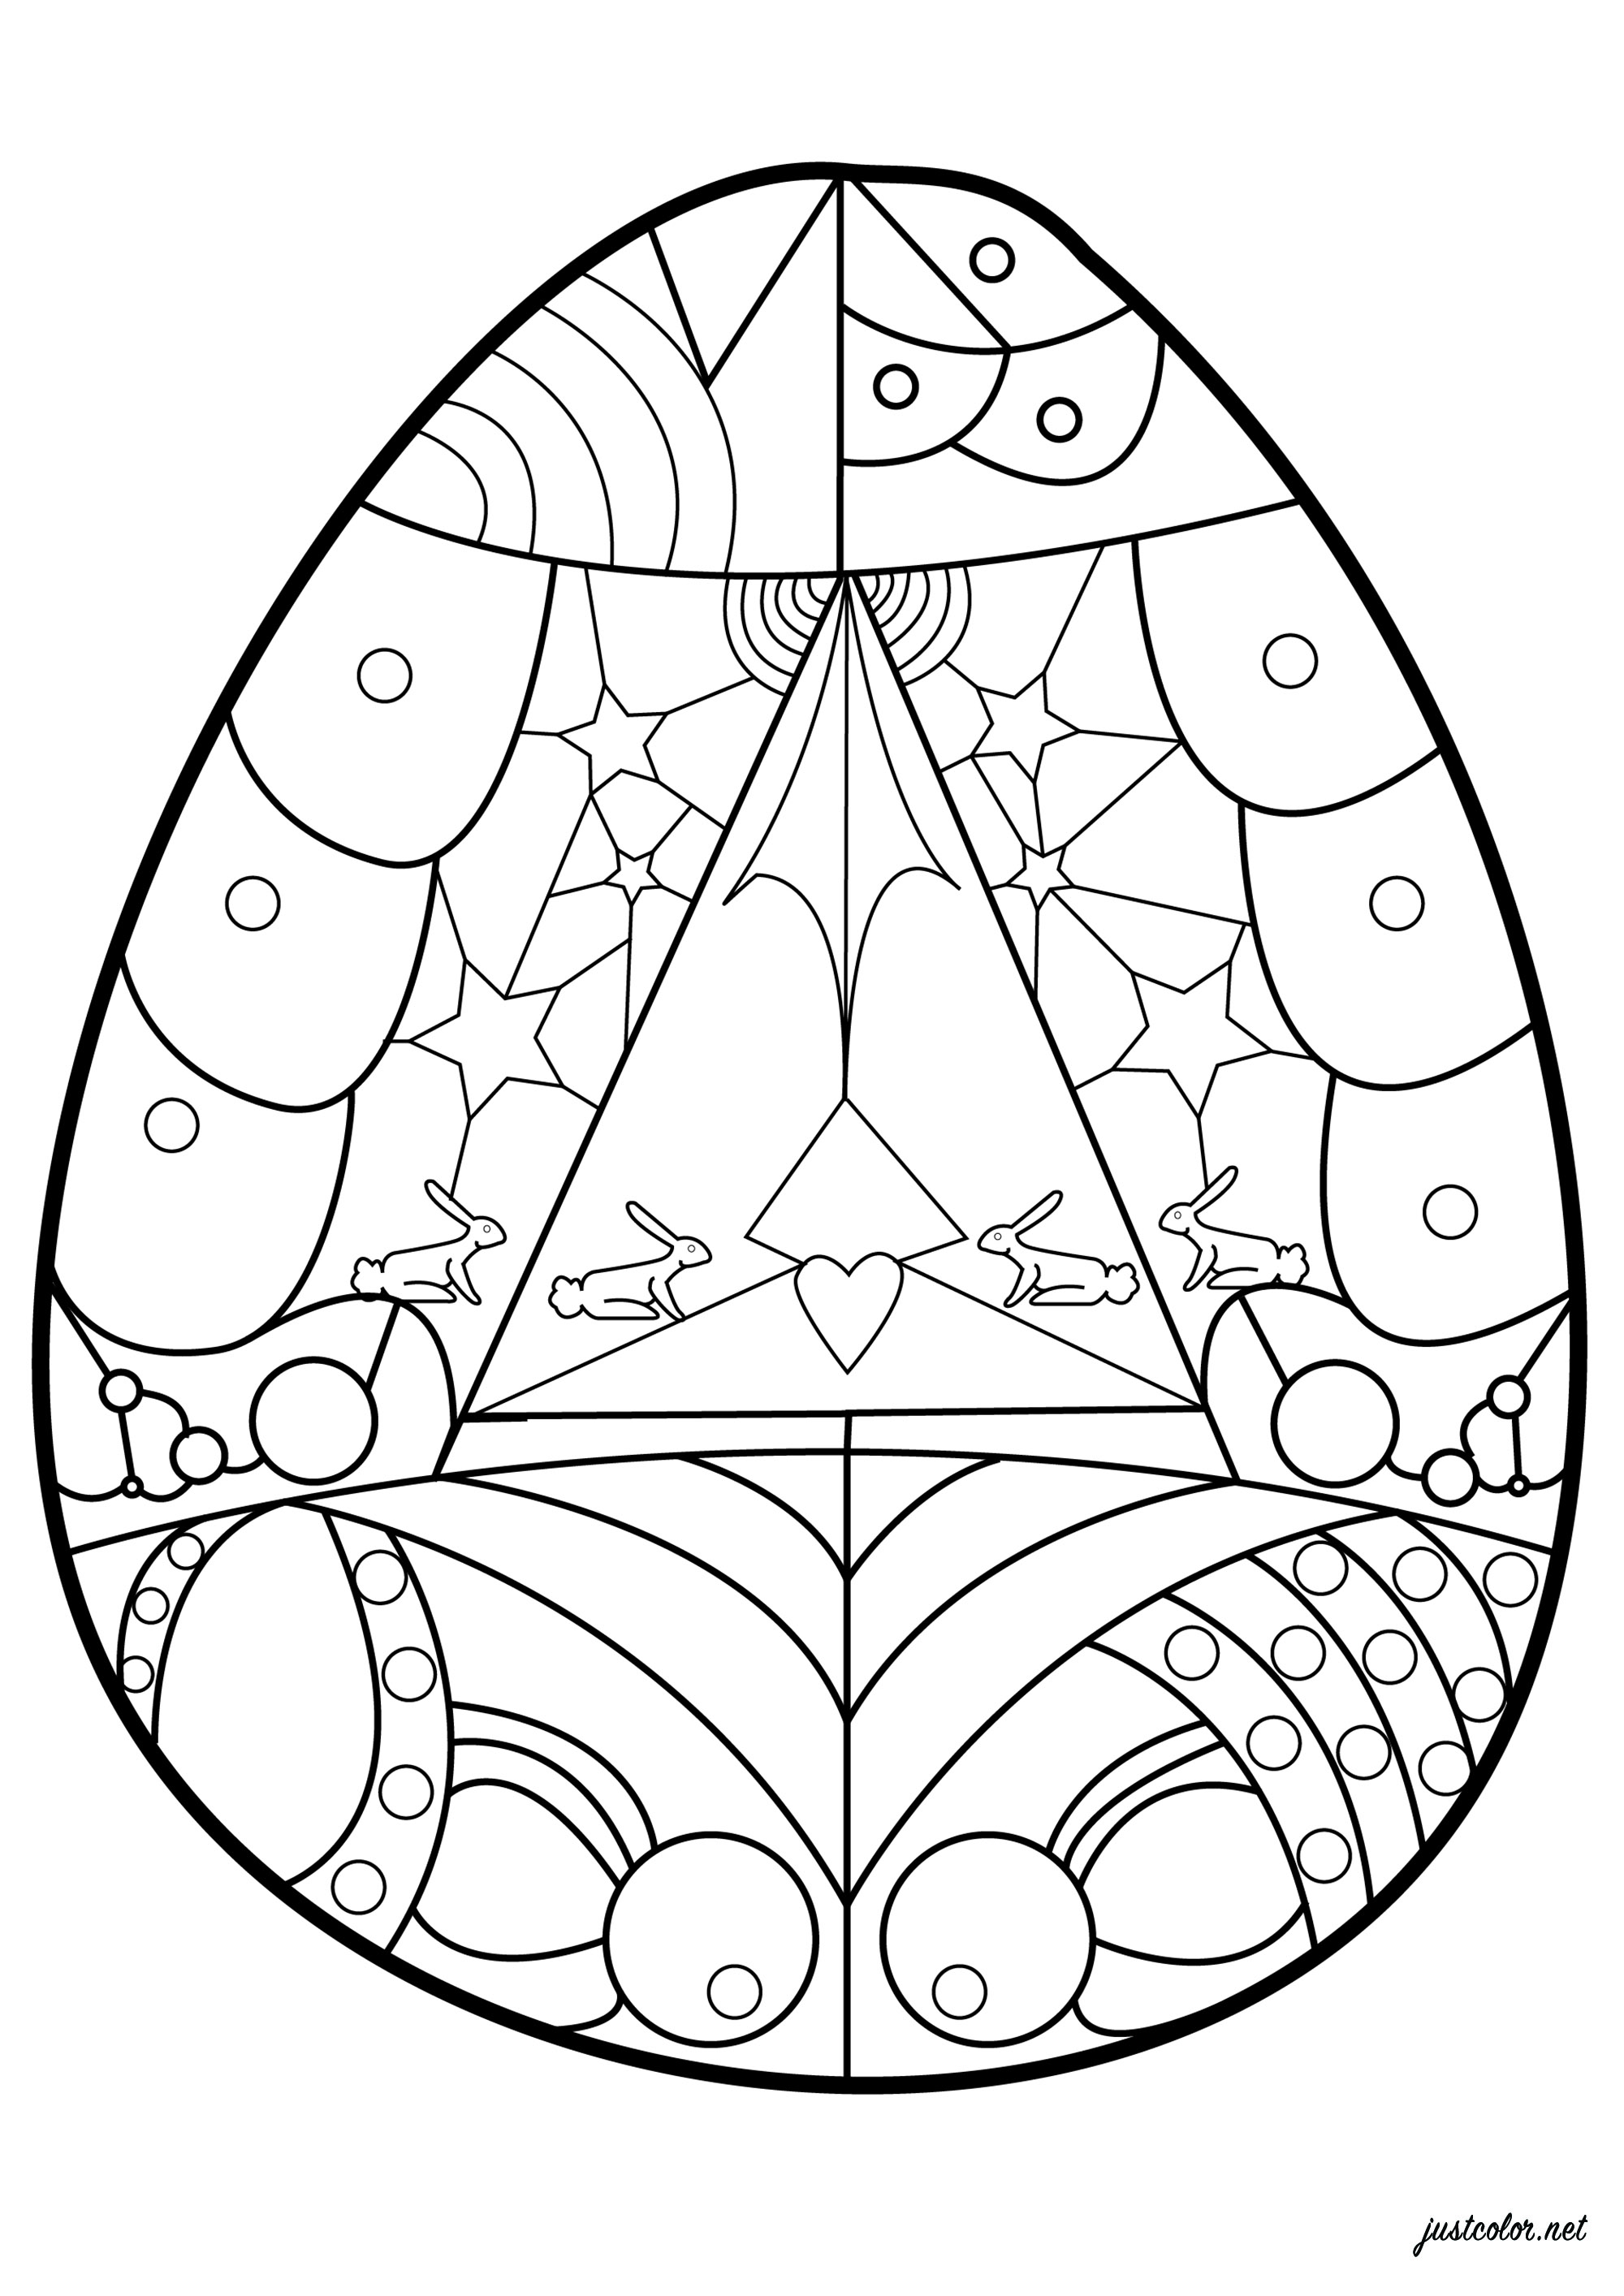 Joli Oeuf de Pâques à colorier avec des formes géométriques à l'intérieur